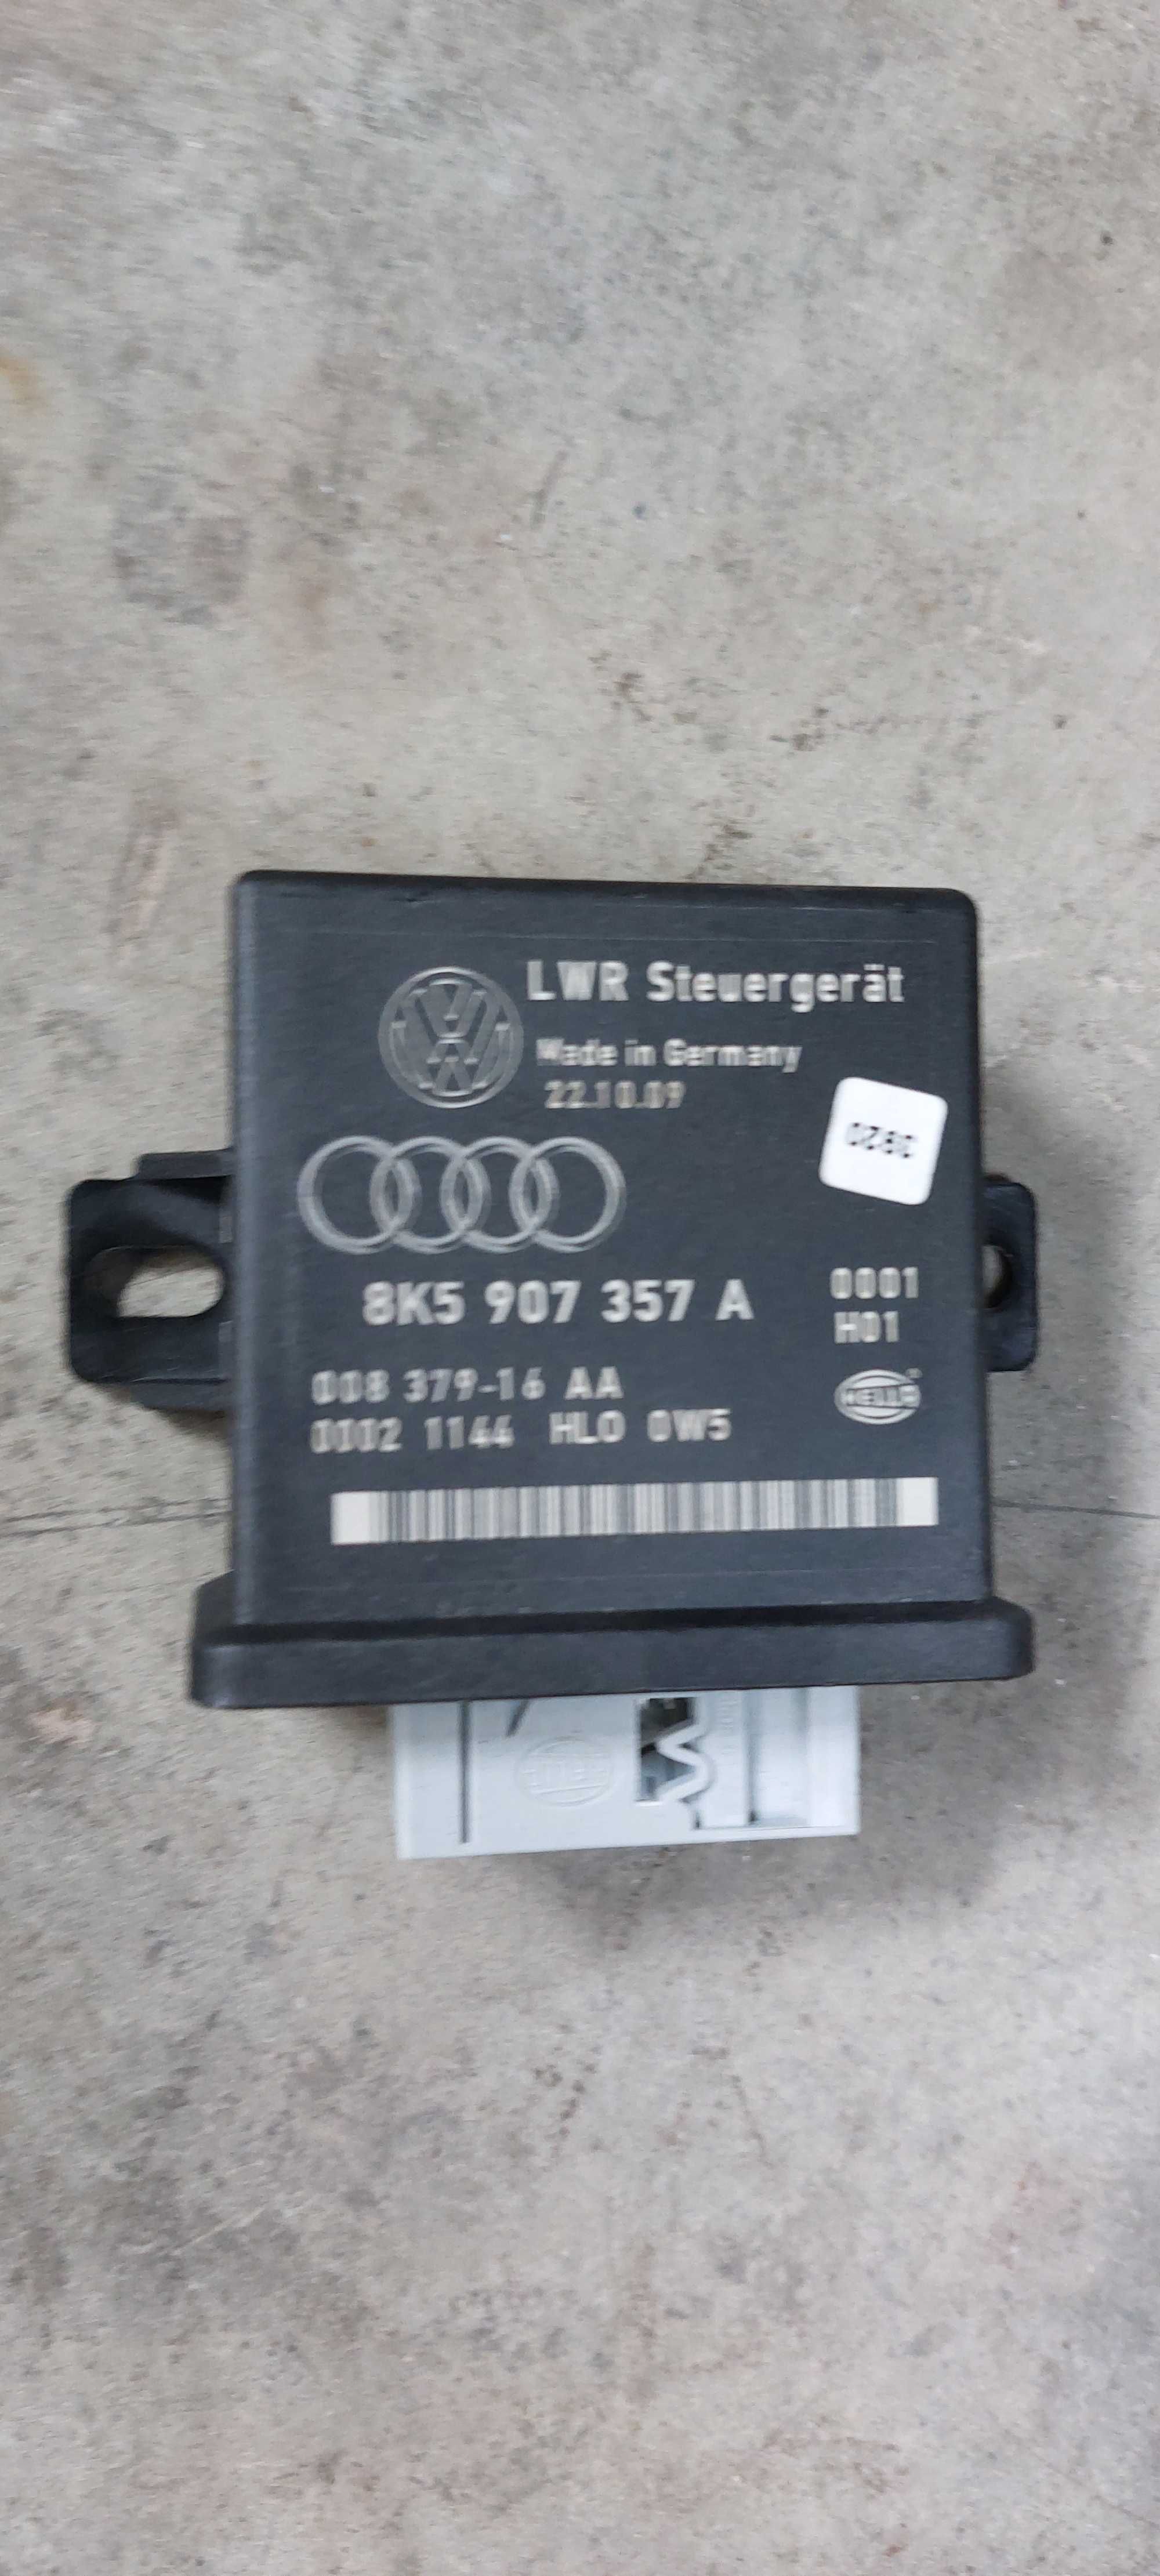 Calculator/modul lumini Audi A4 B8/A5 8K5907357A